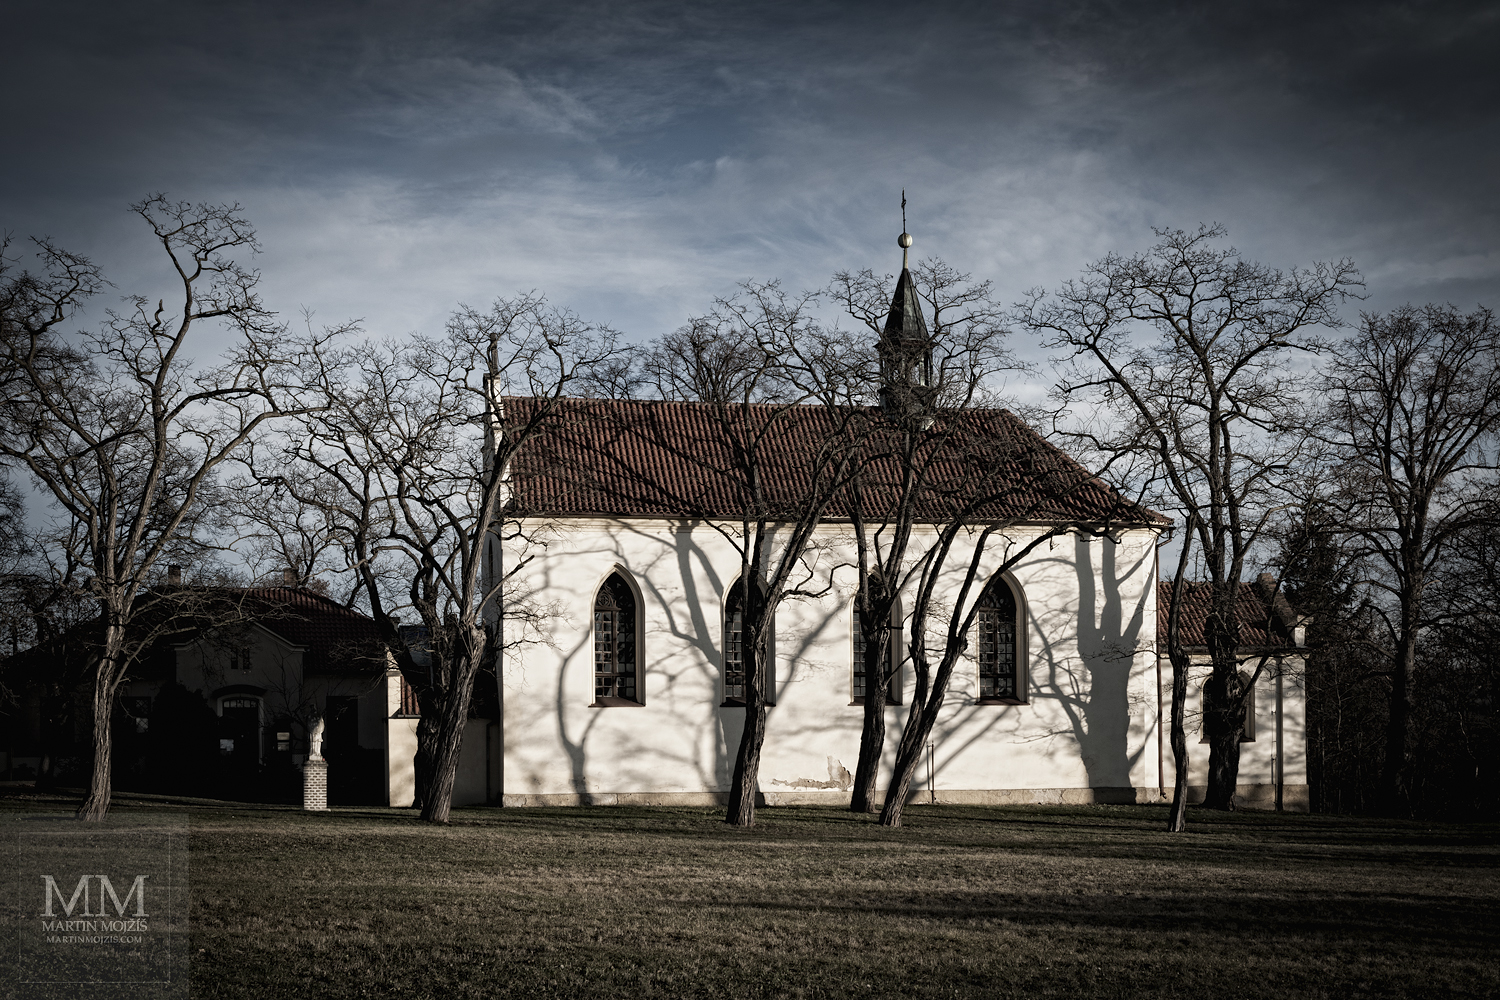 Kostel za stromy v zimě, tmavé mraky.